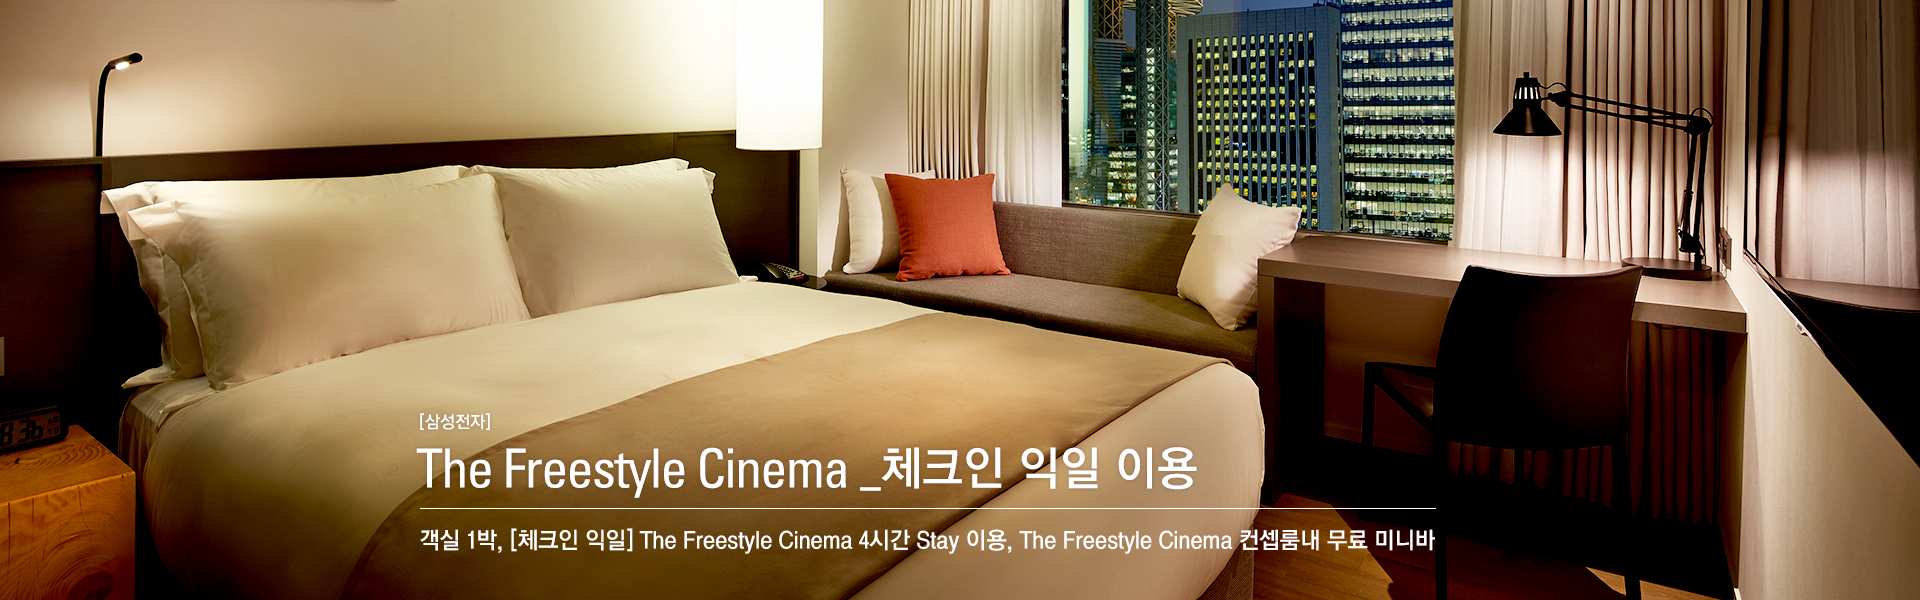 [삼성전자] The Freestyle Cinema